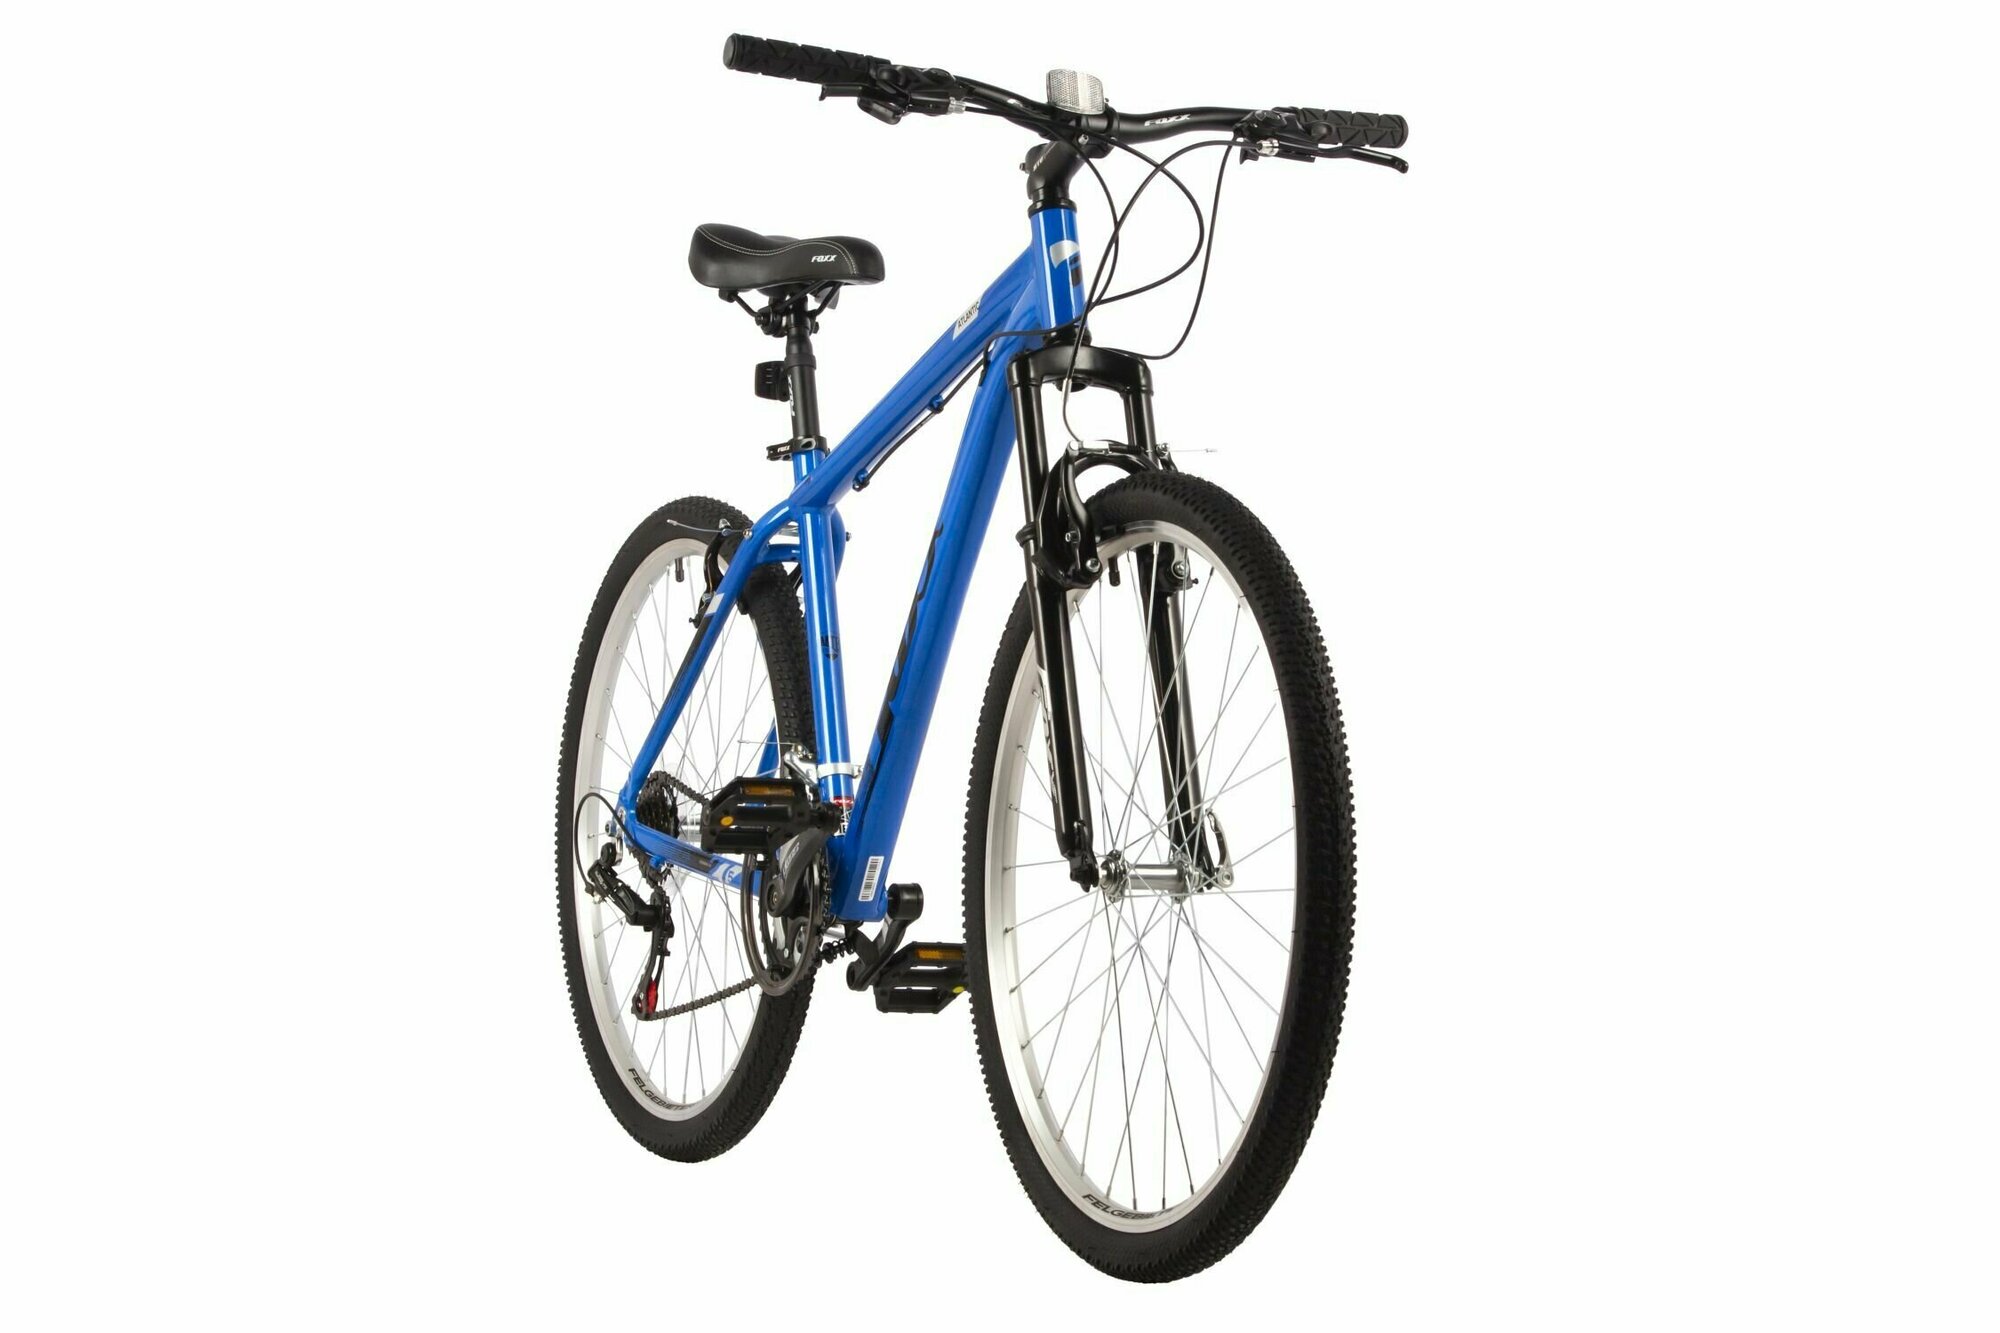 Велосипед FOXX 27.5" ATLANTIC синий, алюминий, размер 16"